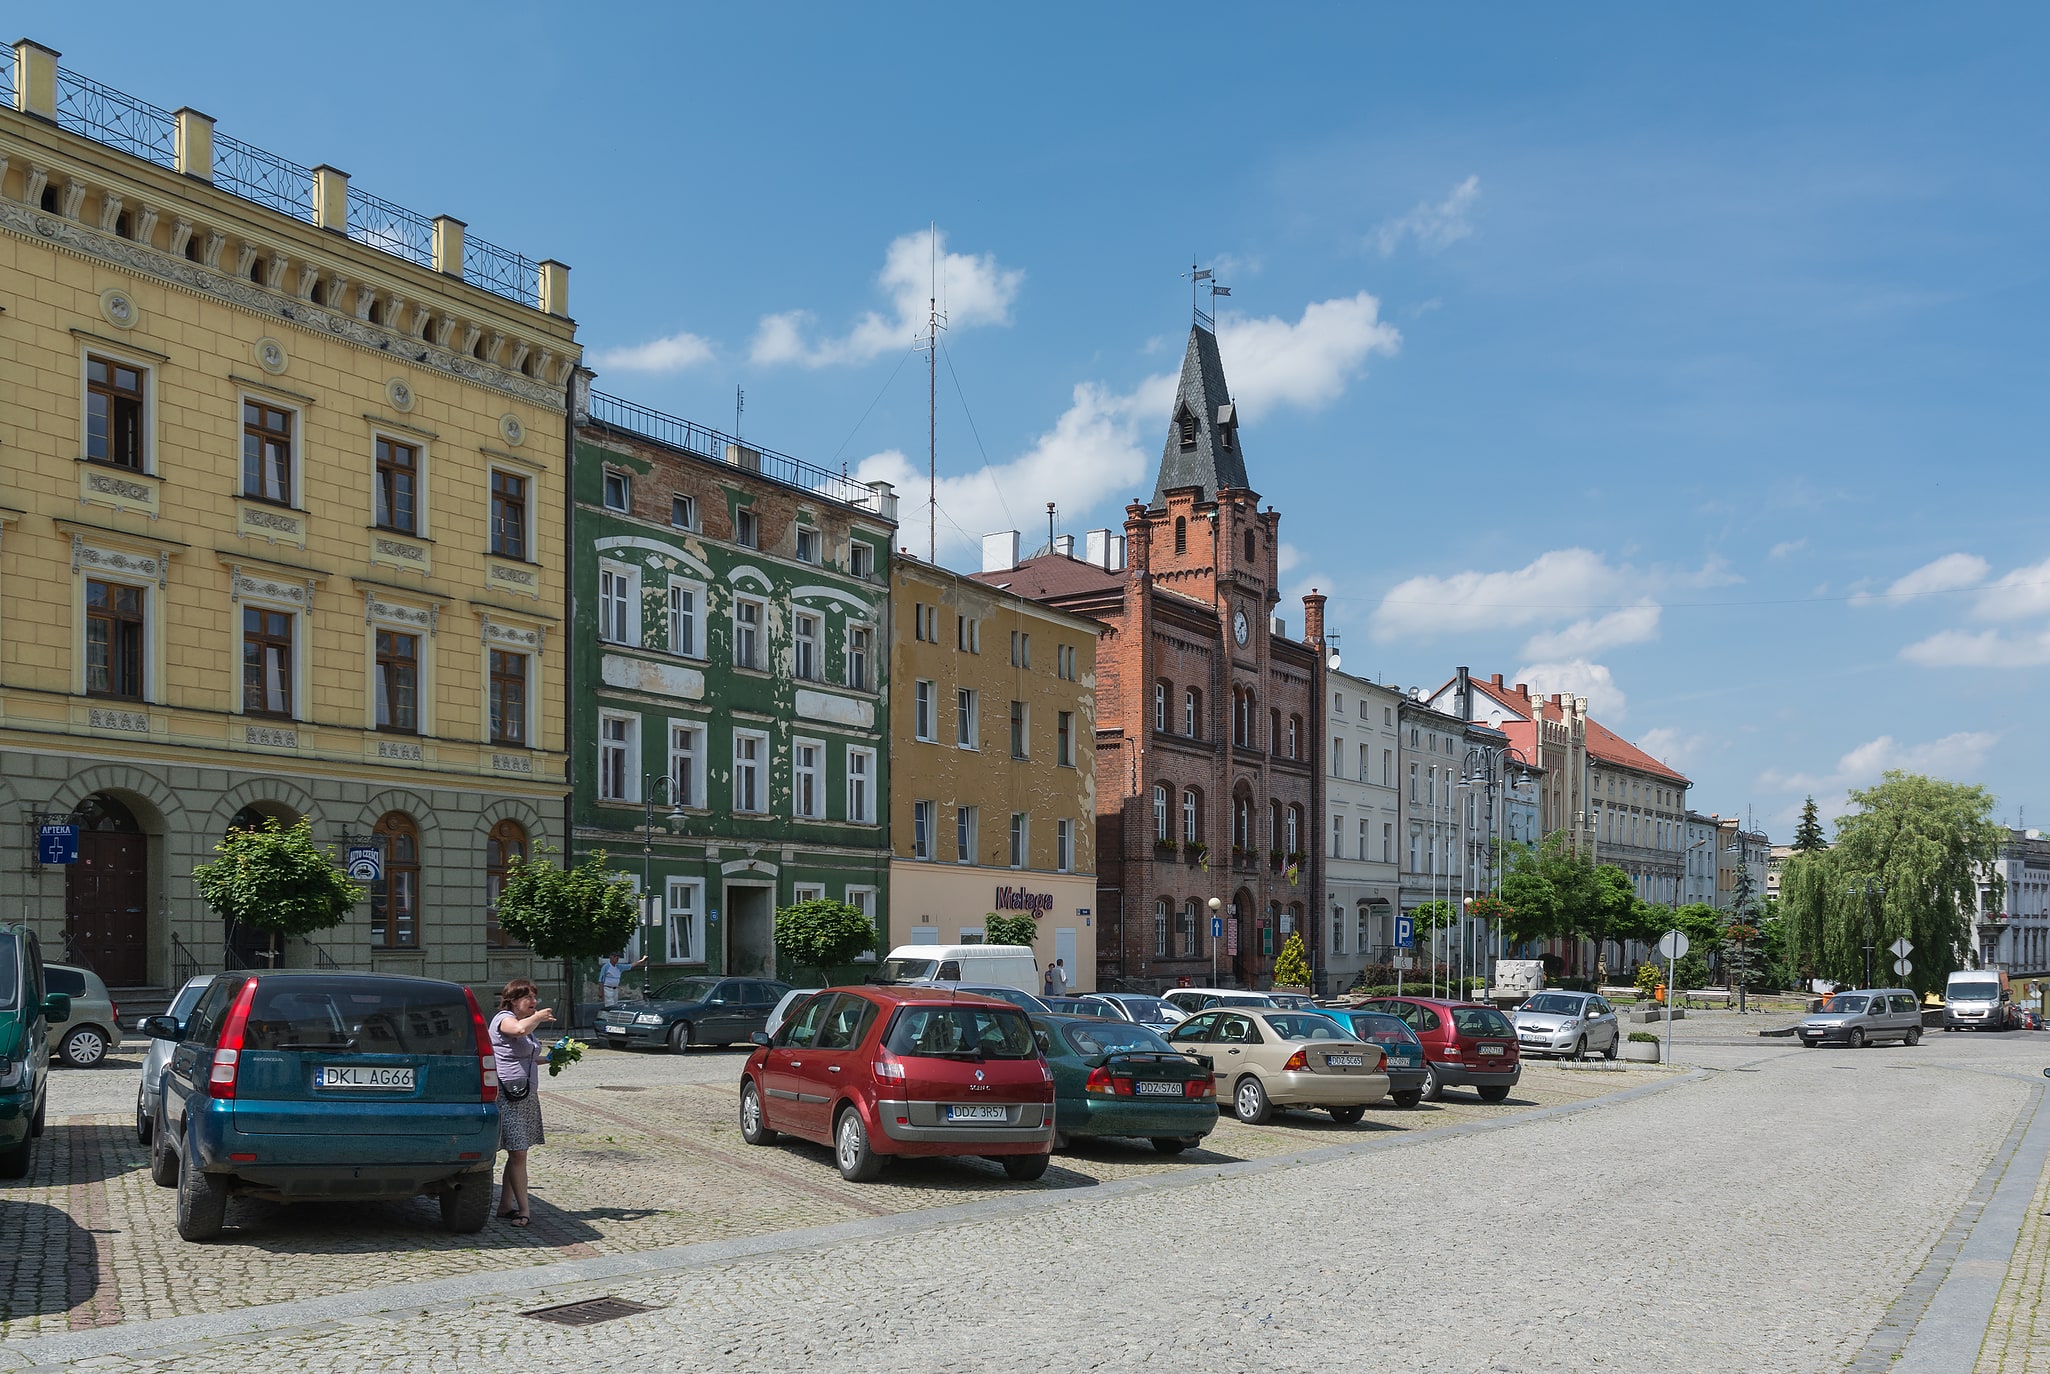 Niemcza, Polska